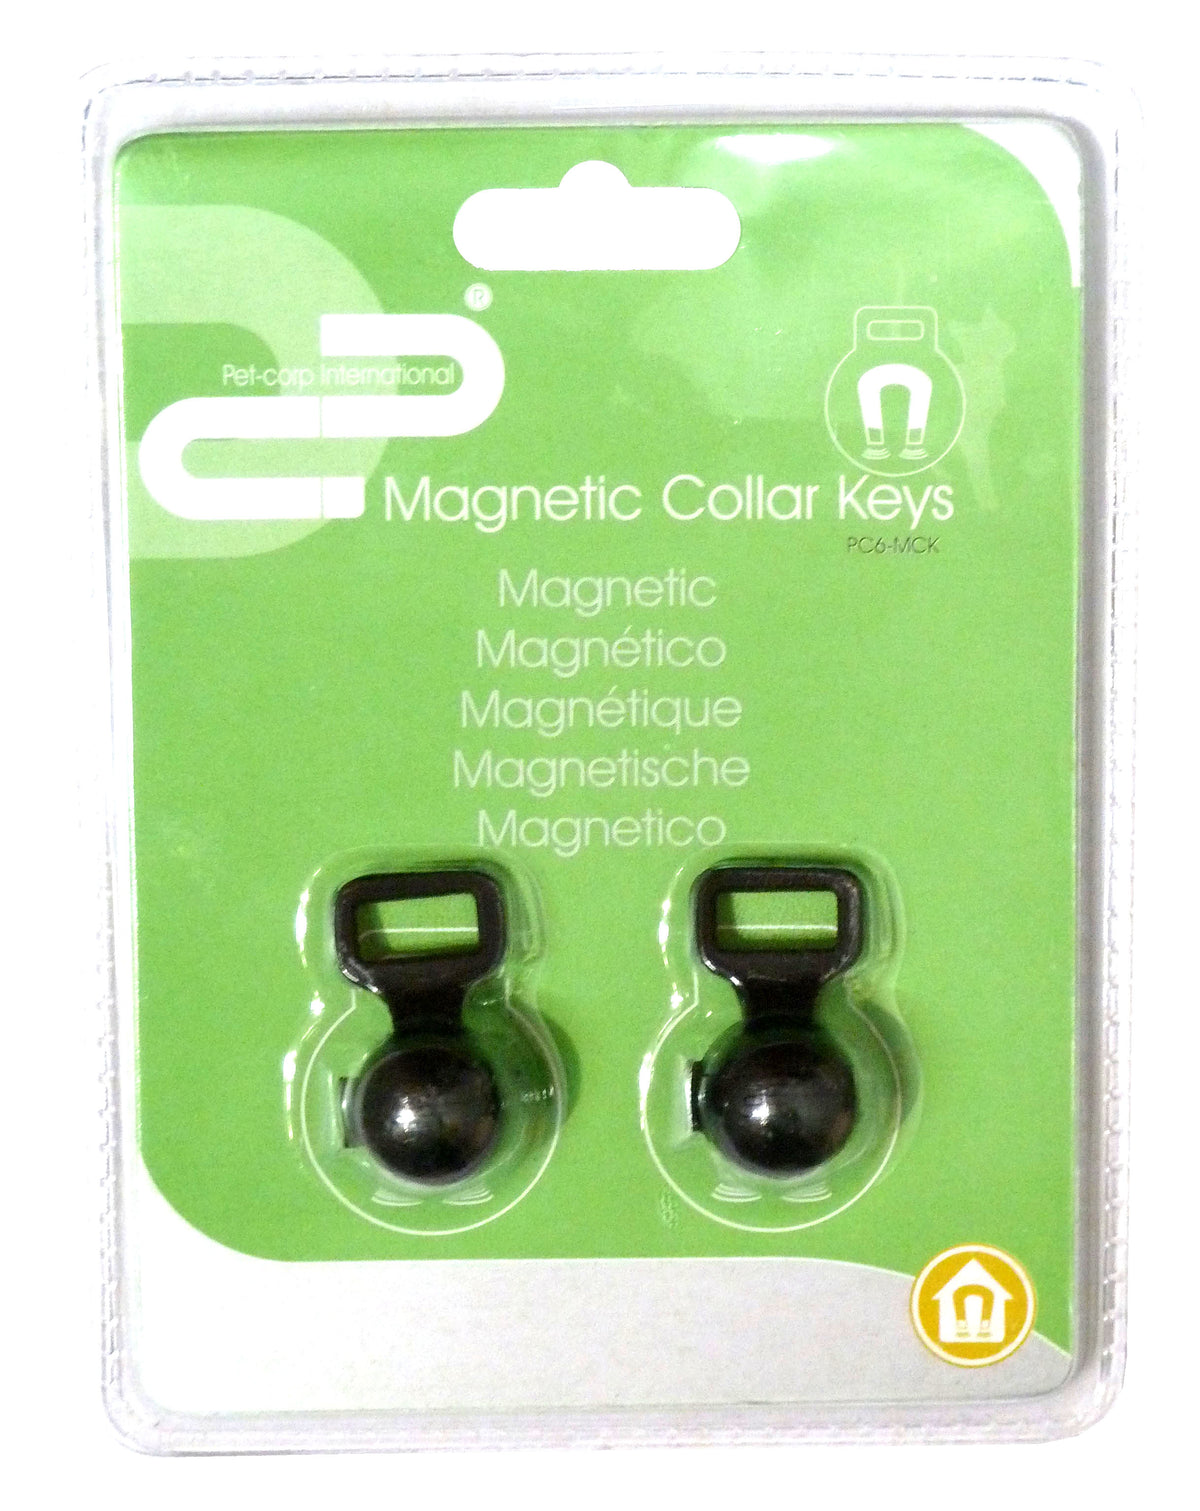 Pet Corp Magnet Collar Keys